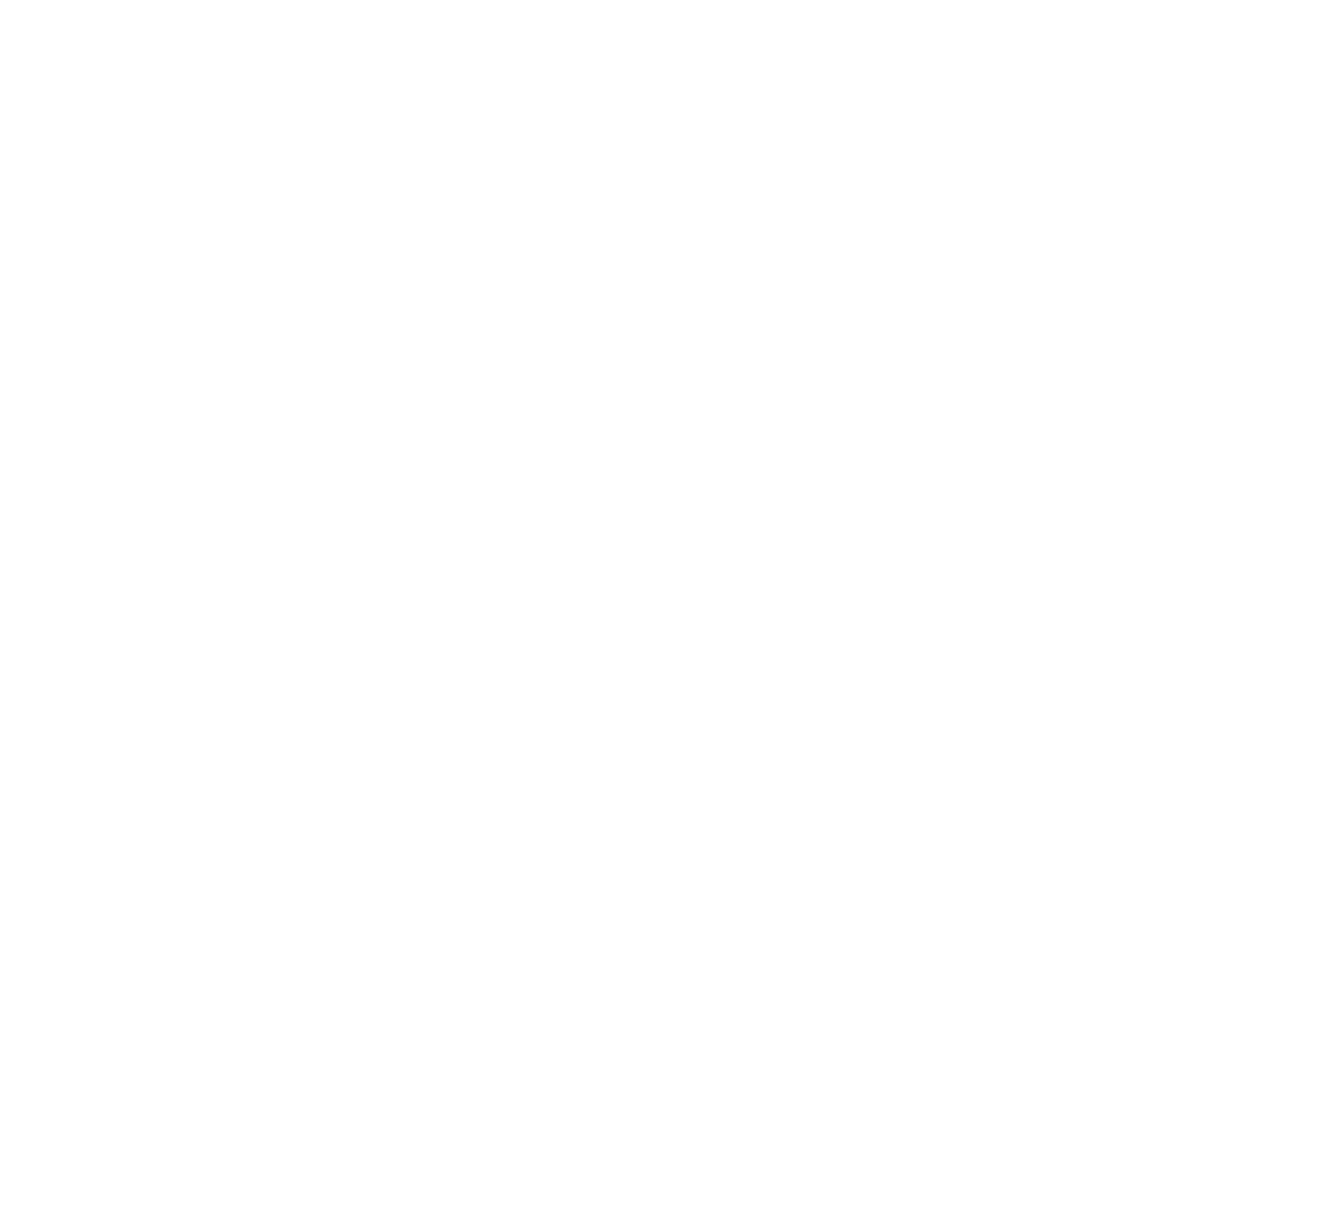 One World Cafe